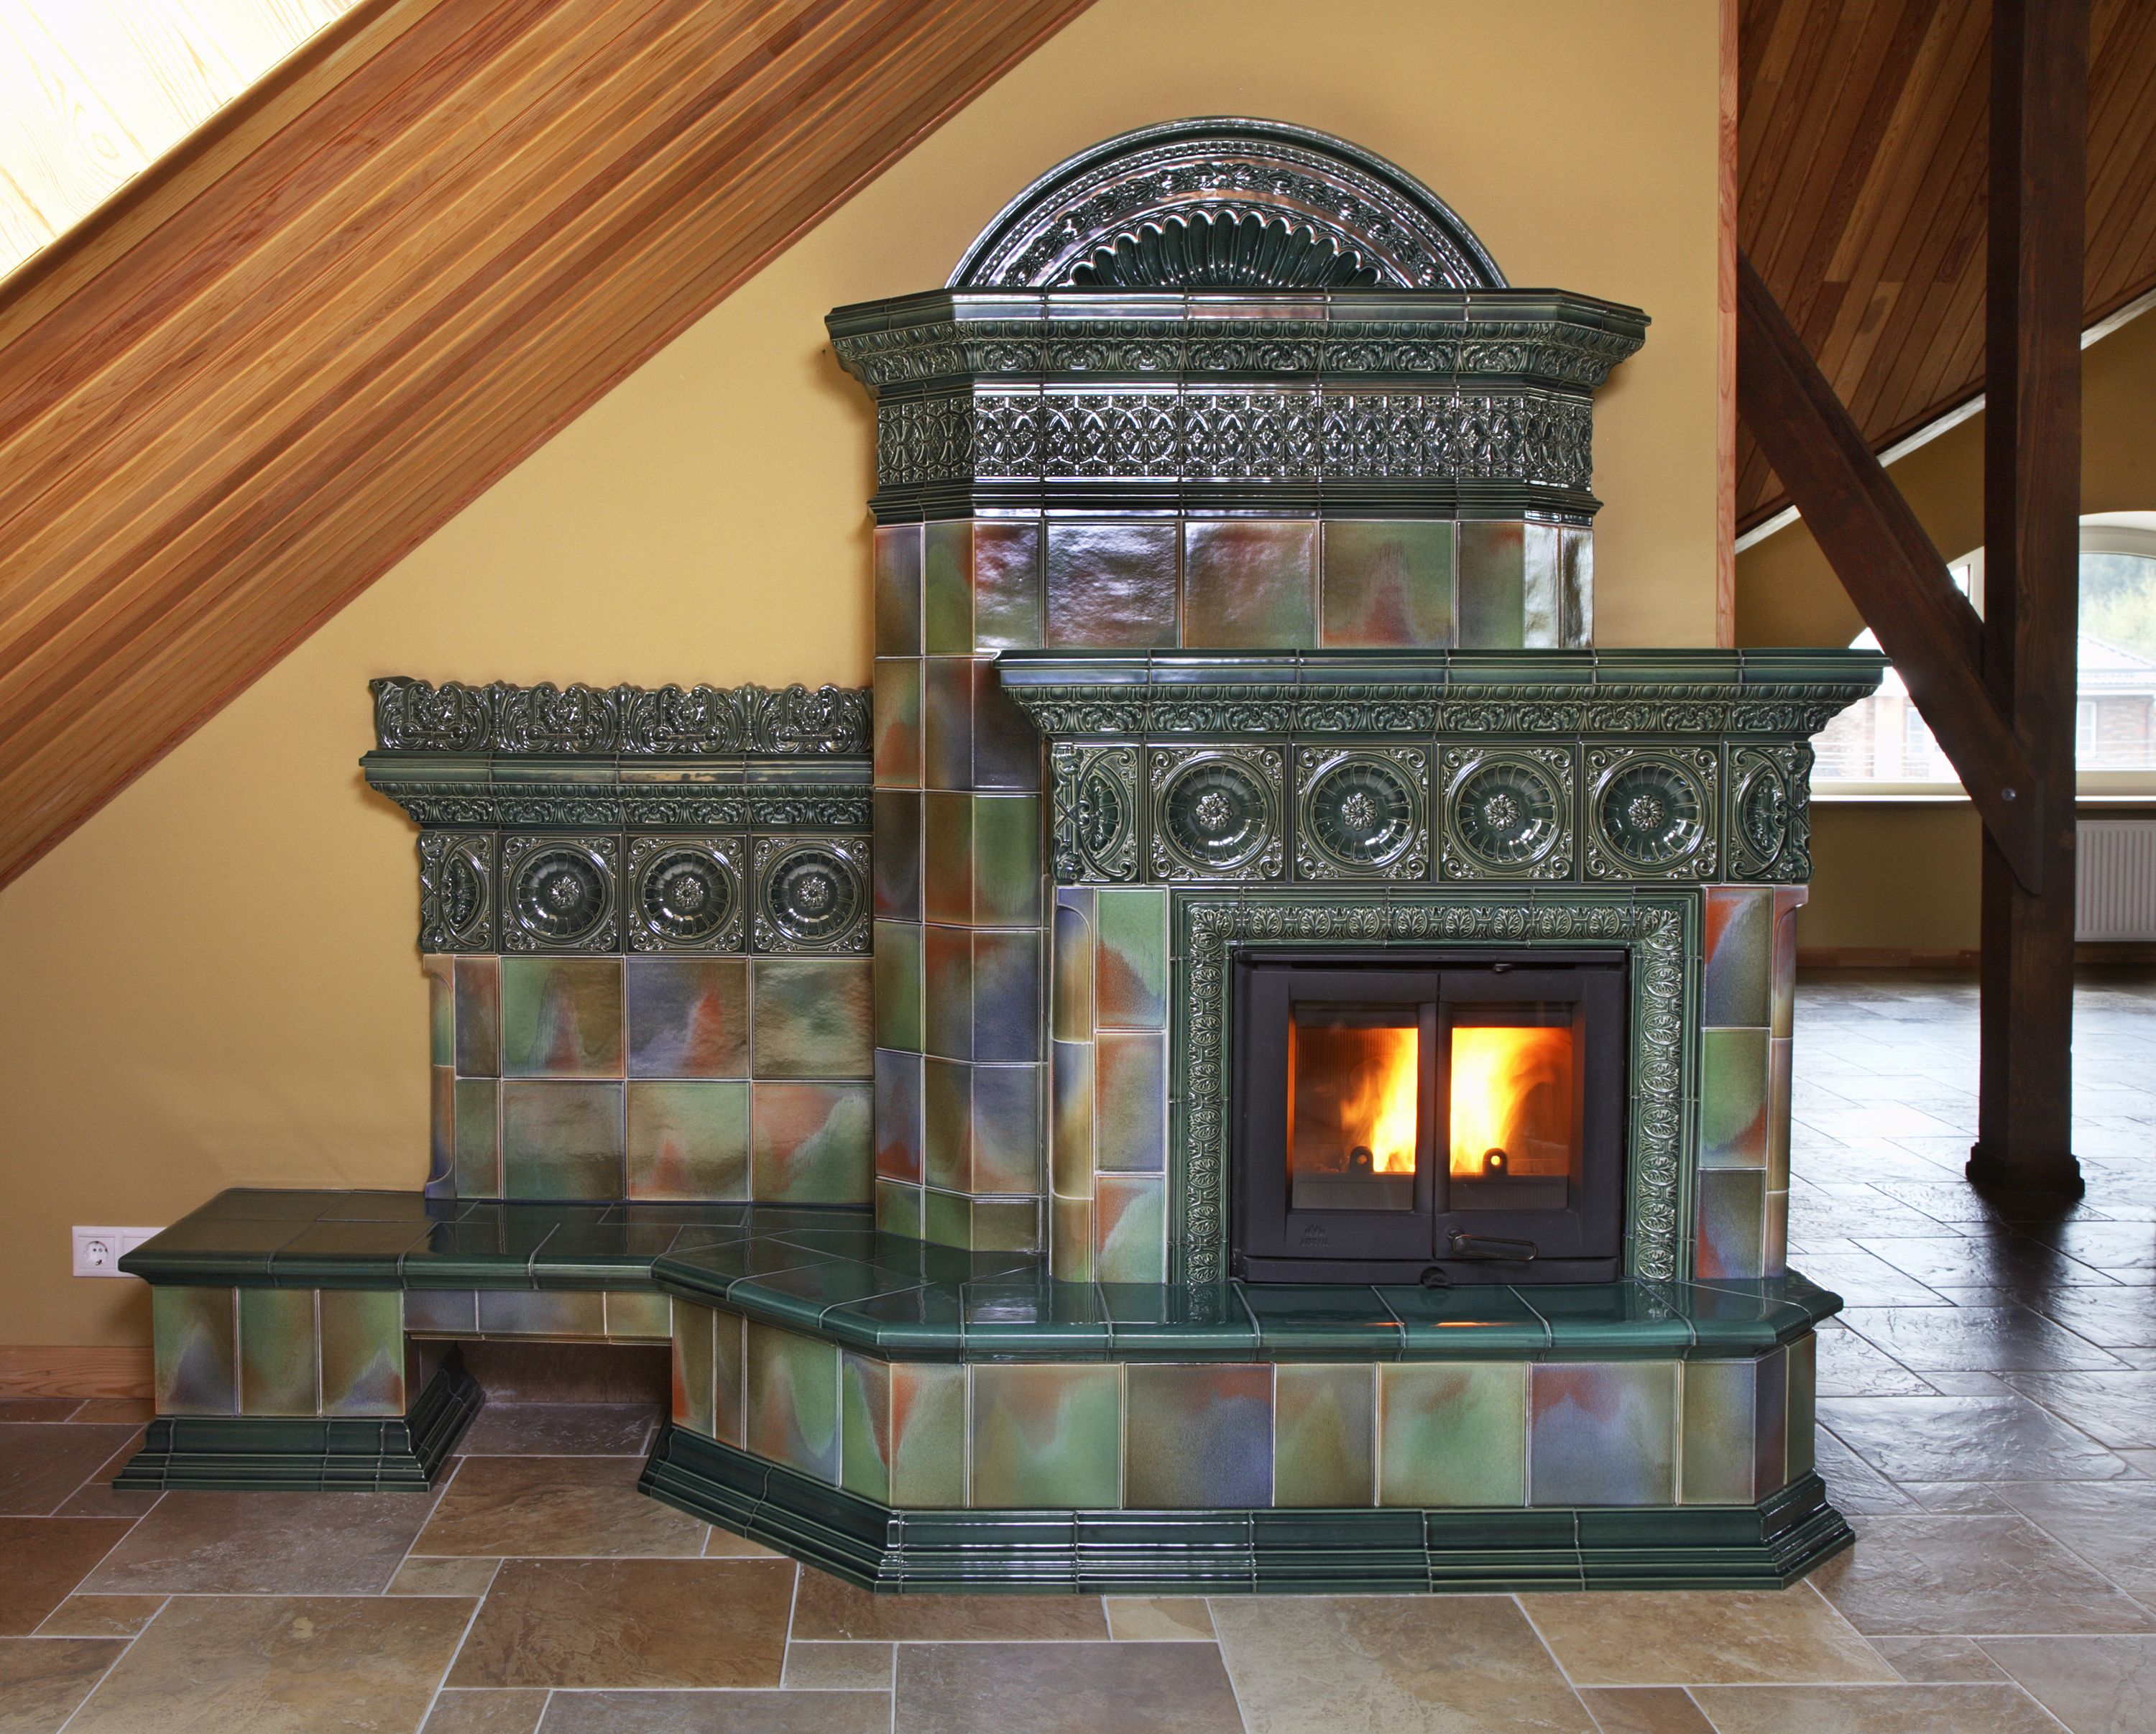 Fireplace Trim Moulding Beautiful ÐÐ·ÑÐ°Ð·ÑÐ¾Ð²ÑÐ¹ ÐºÐ°Ð¼Ð¸Ð½ Ñ Ð¿Ð¾Ð Ð¸Ð²Ð°Ð¼Ð¸ ÐÐ Ð¾ÑÐºÐ¸Ðµ Ð¸Ð·ÑÐ°Ð·ÑÑ ÑÑÐ Ð¾Ð²Ð° ÐºÐ°Ð¼Ð¸Ð½Ð°